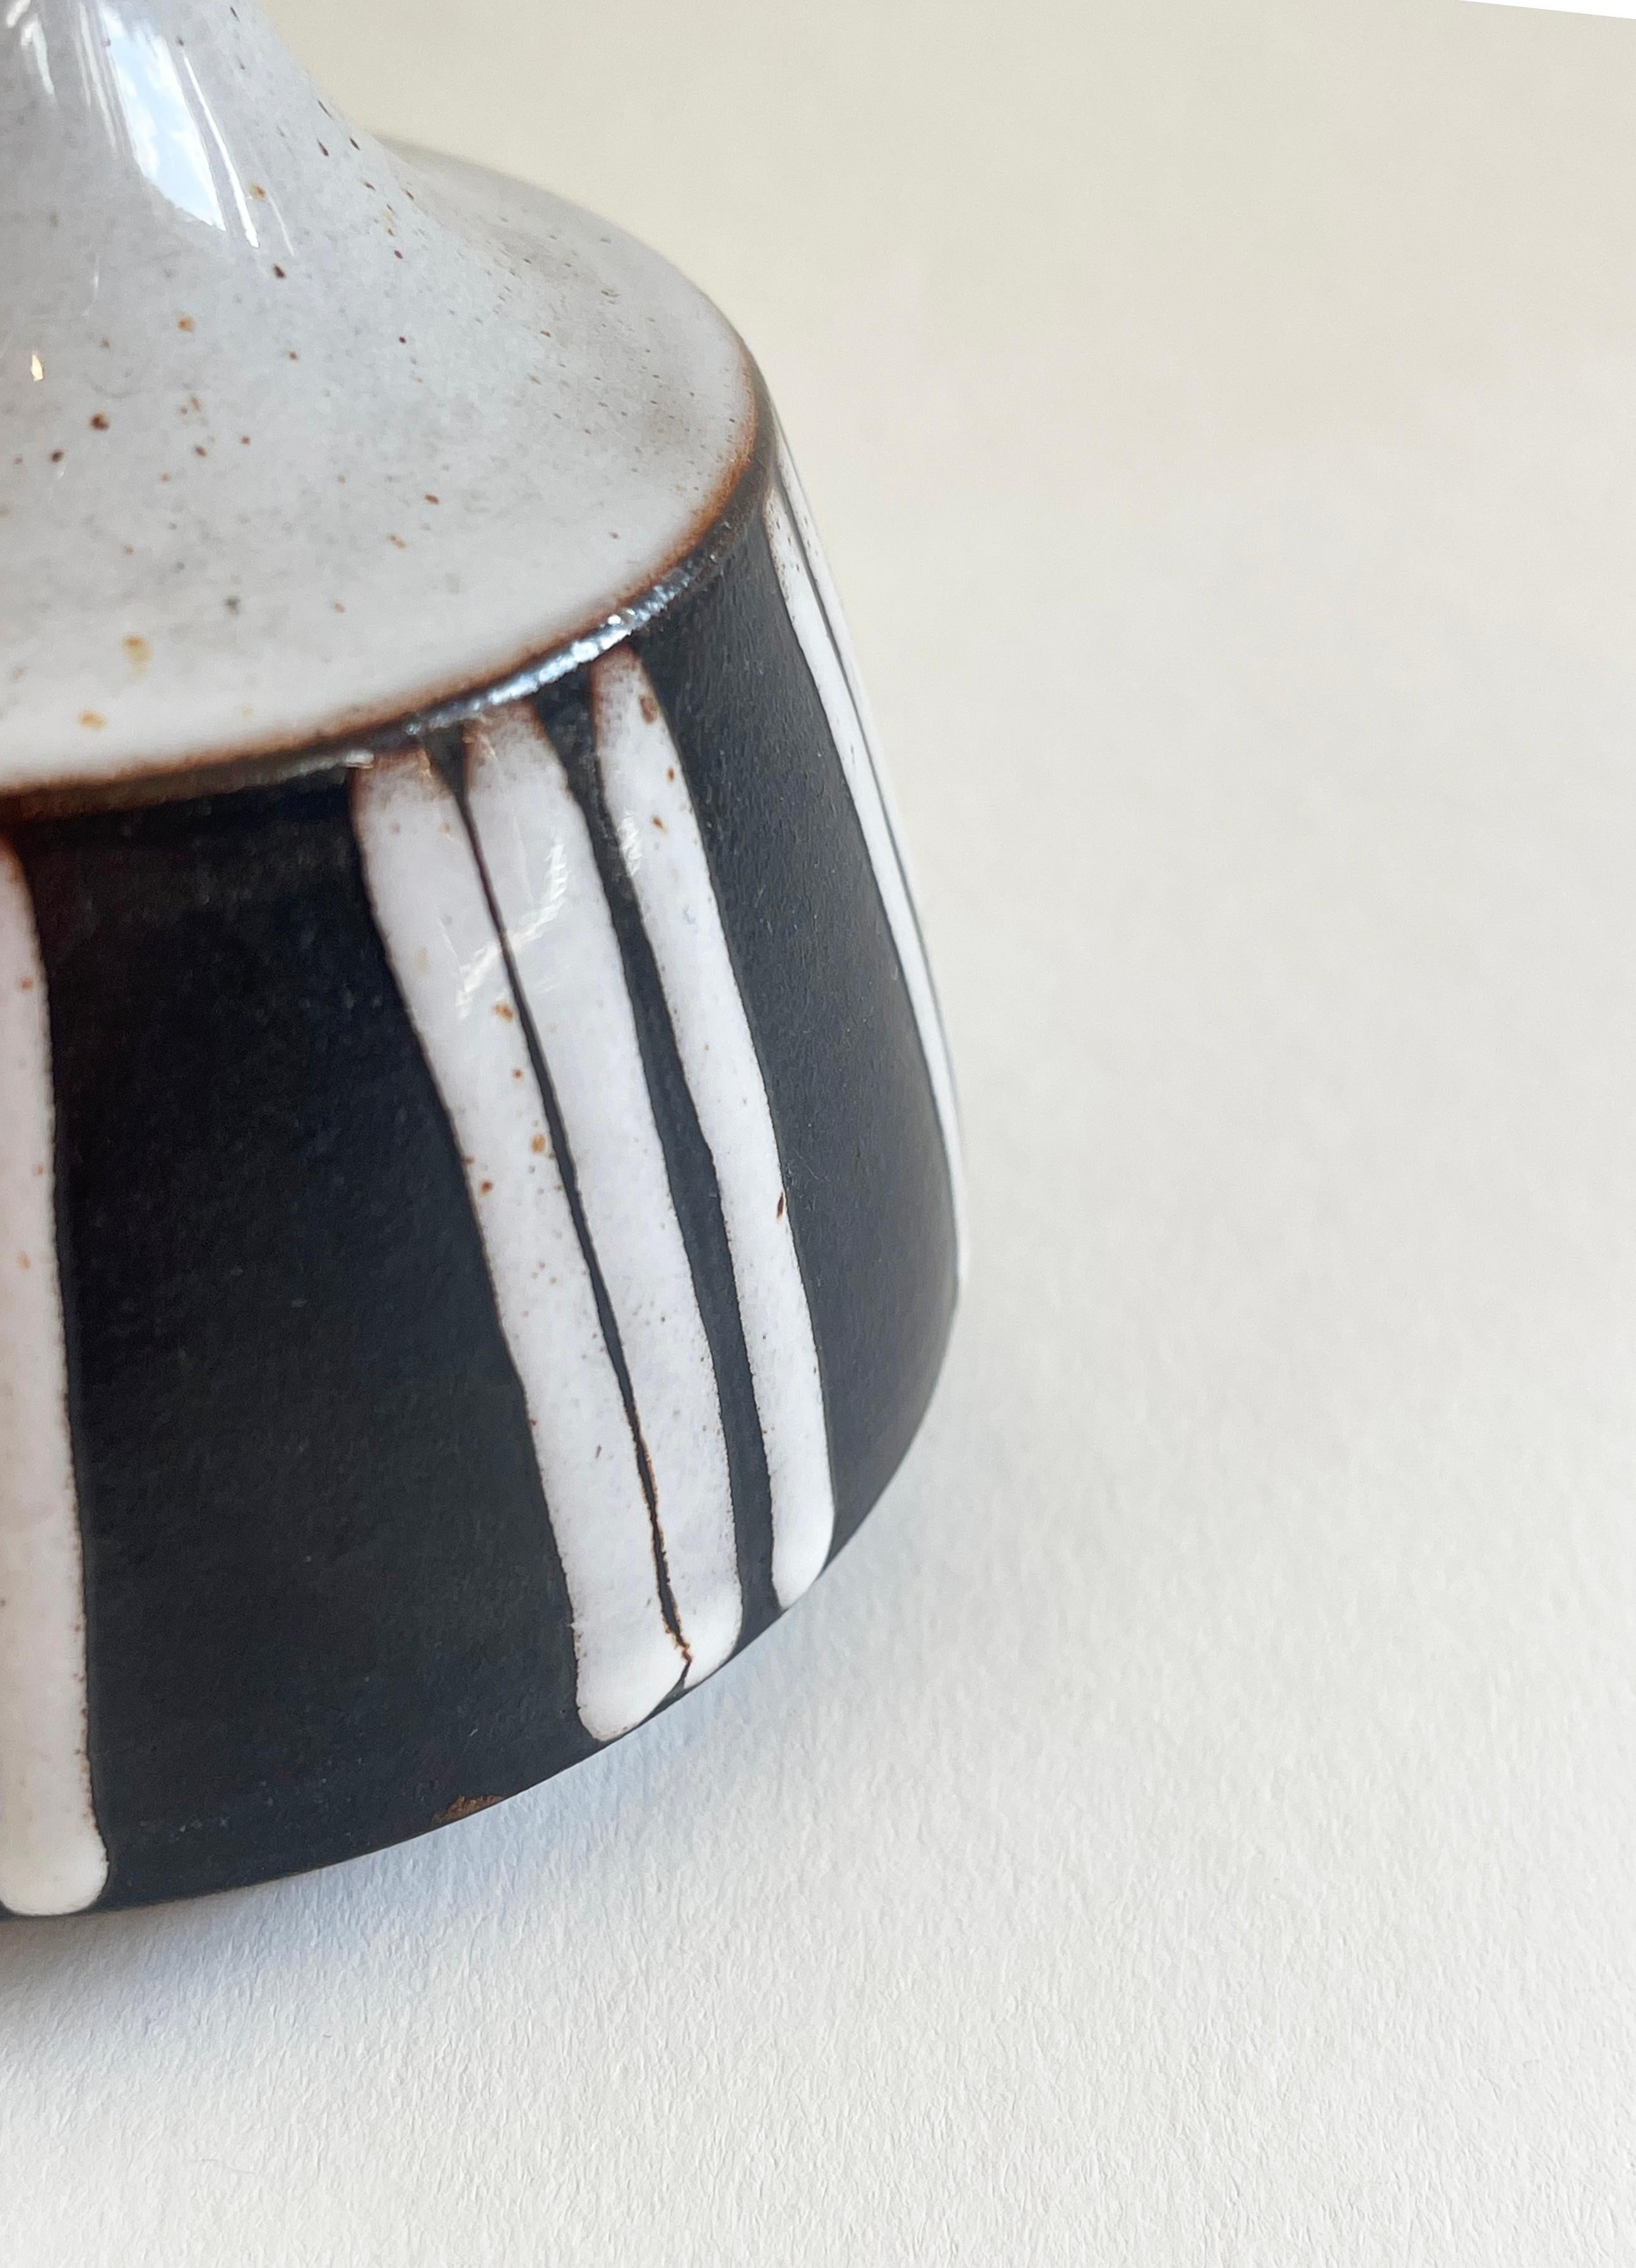 Une belle ambiance ethnique émane de ce petit vase en céramique d'un studio allemand.
Fabriqué vers 1970, ce vase est unique et signé par BS Goslar.
Les zones beiges, y compris les rayures, sont brillantes et légèrement 